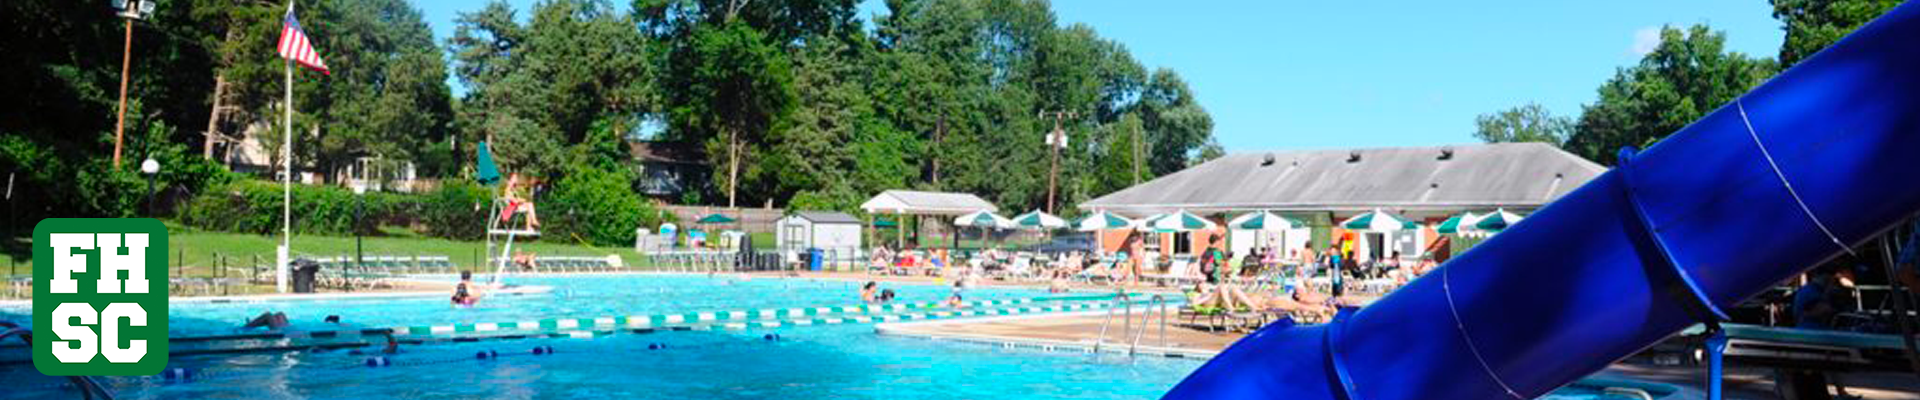 Forest Hollow Swim Club